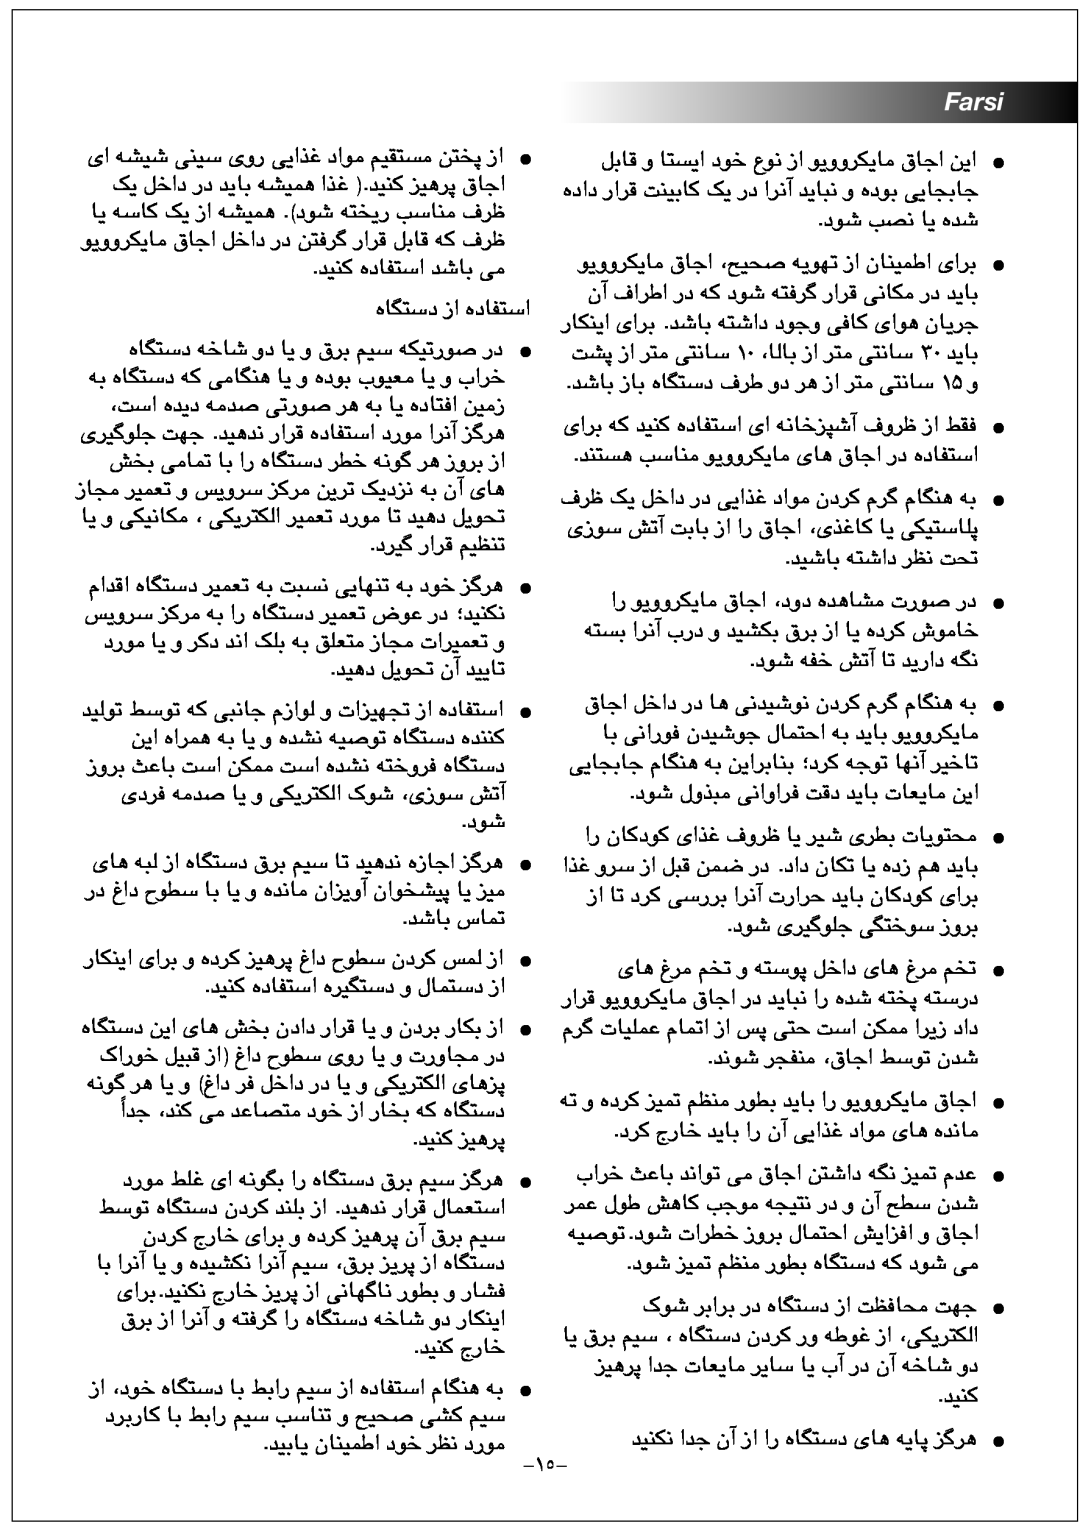 Black & Decker MY2000PSA manual Farsi 